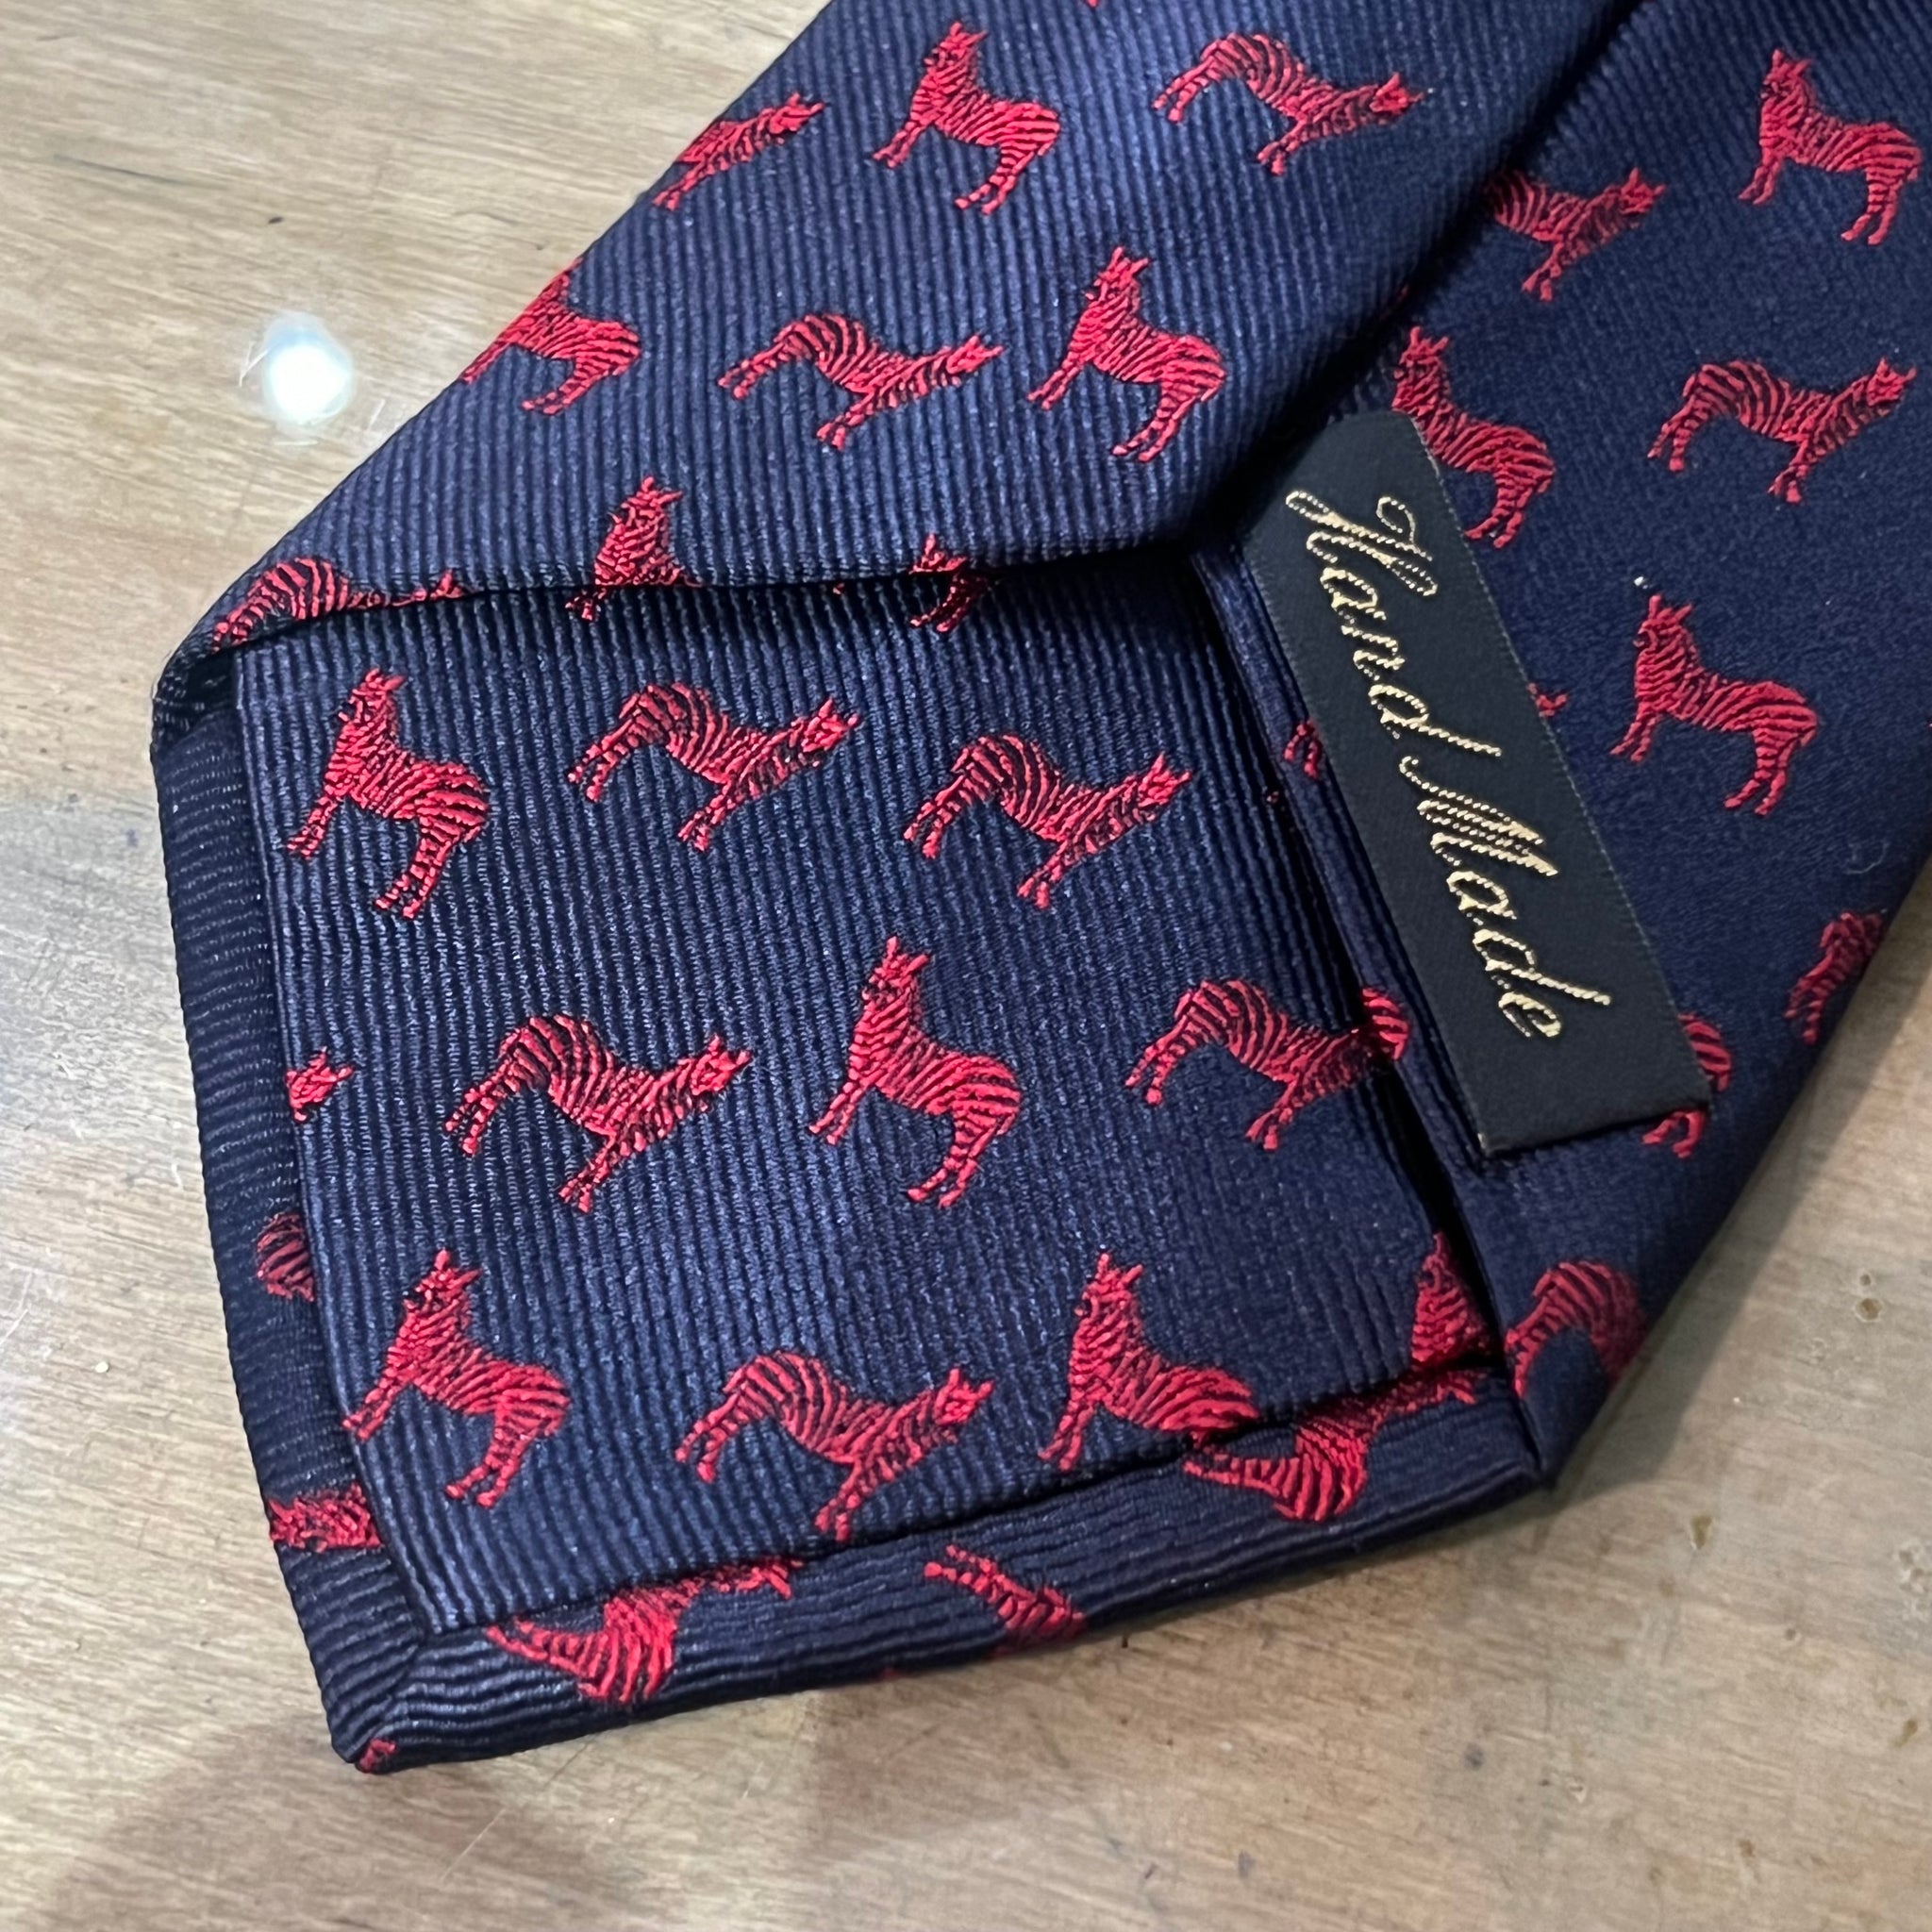 Zebra Silk Tie by  New & Lingwood